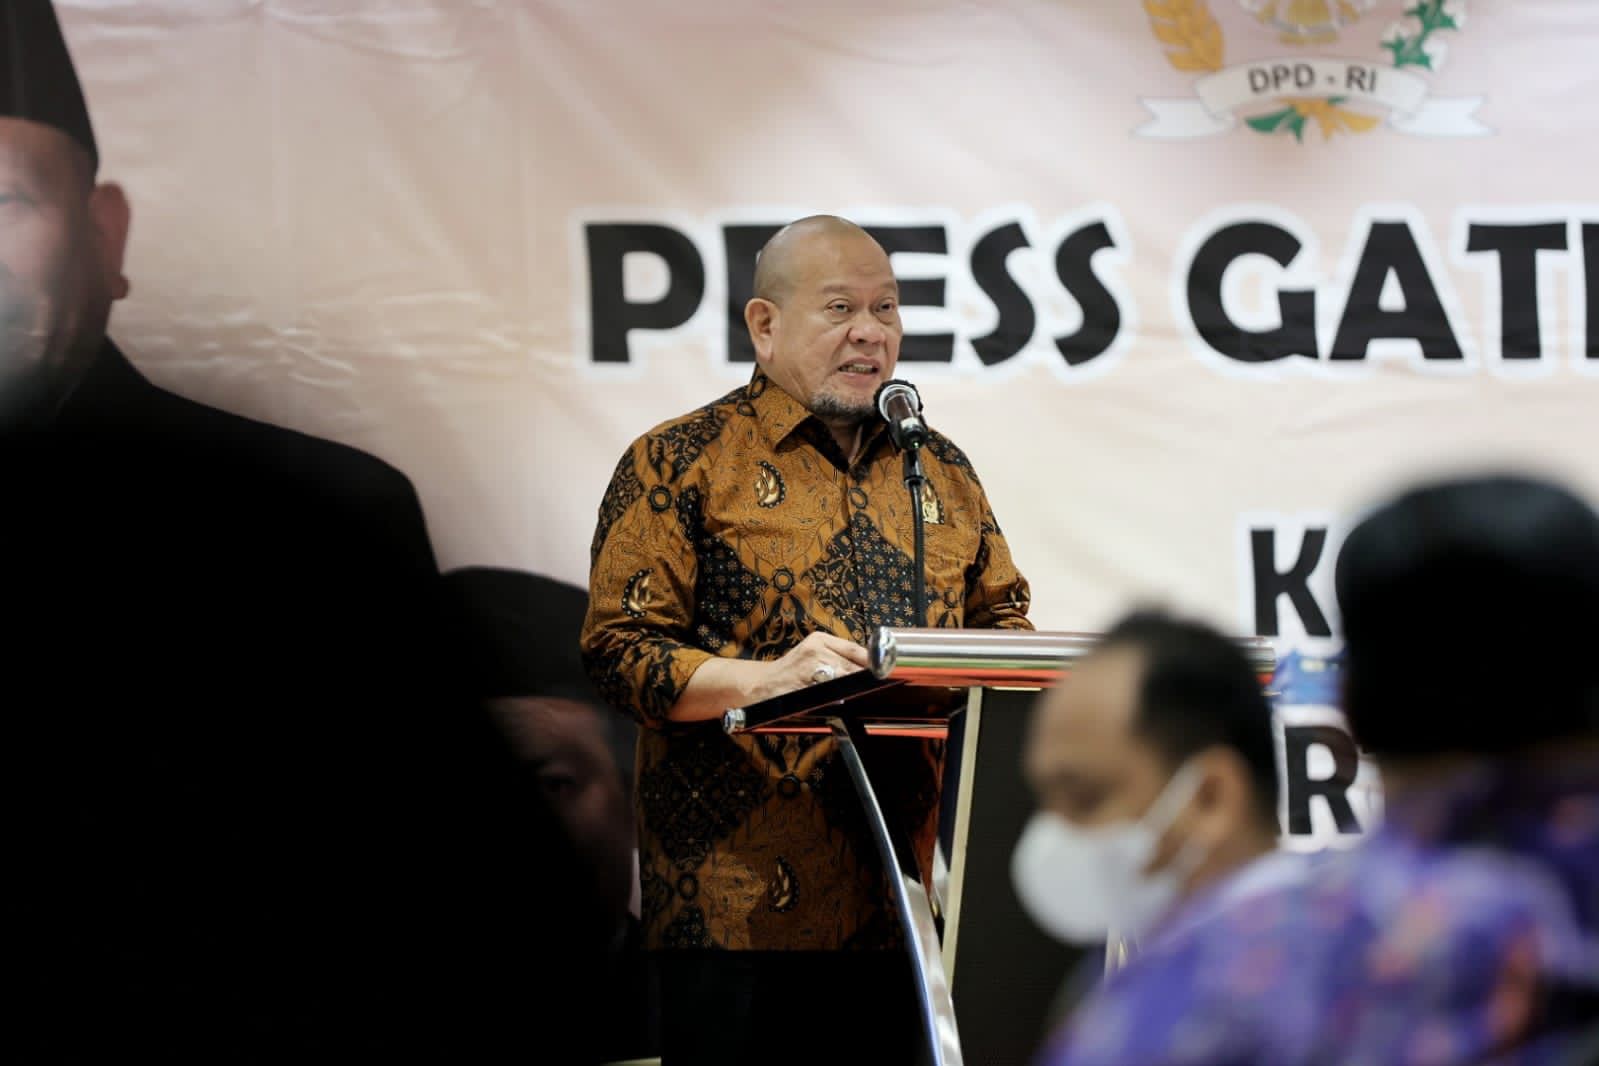 Ketua DPD RI : Dorongan Energi Media Jadikan Indonesia Lebih Demokratis*